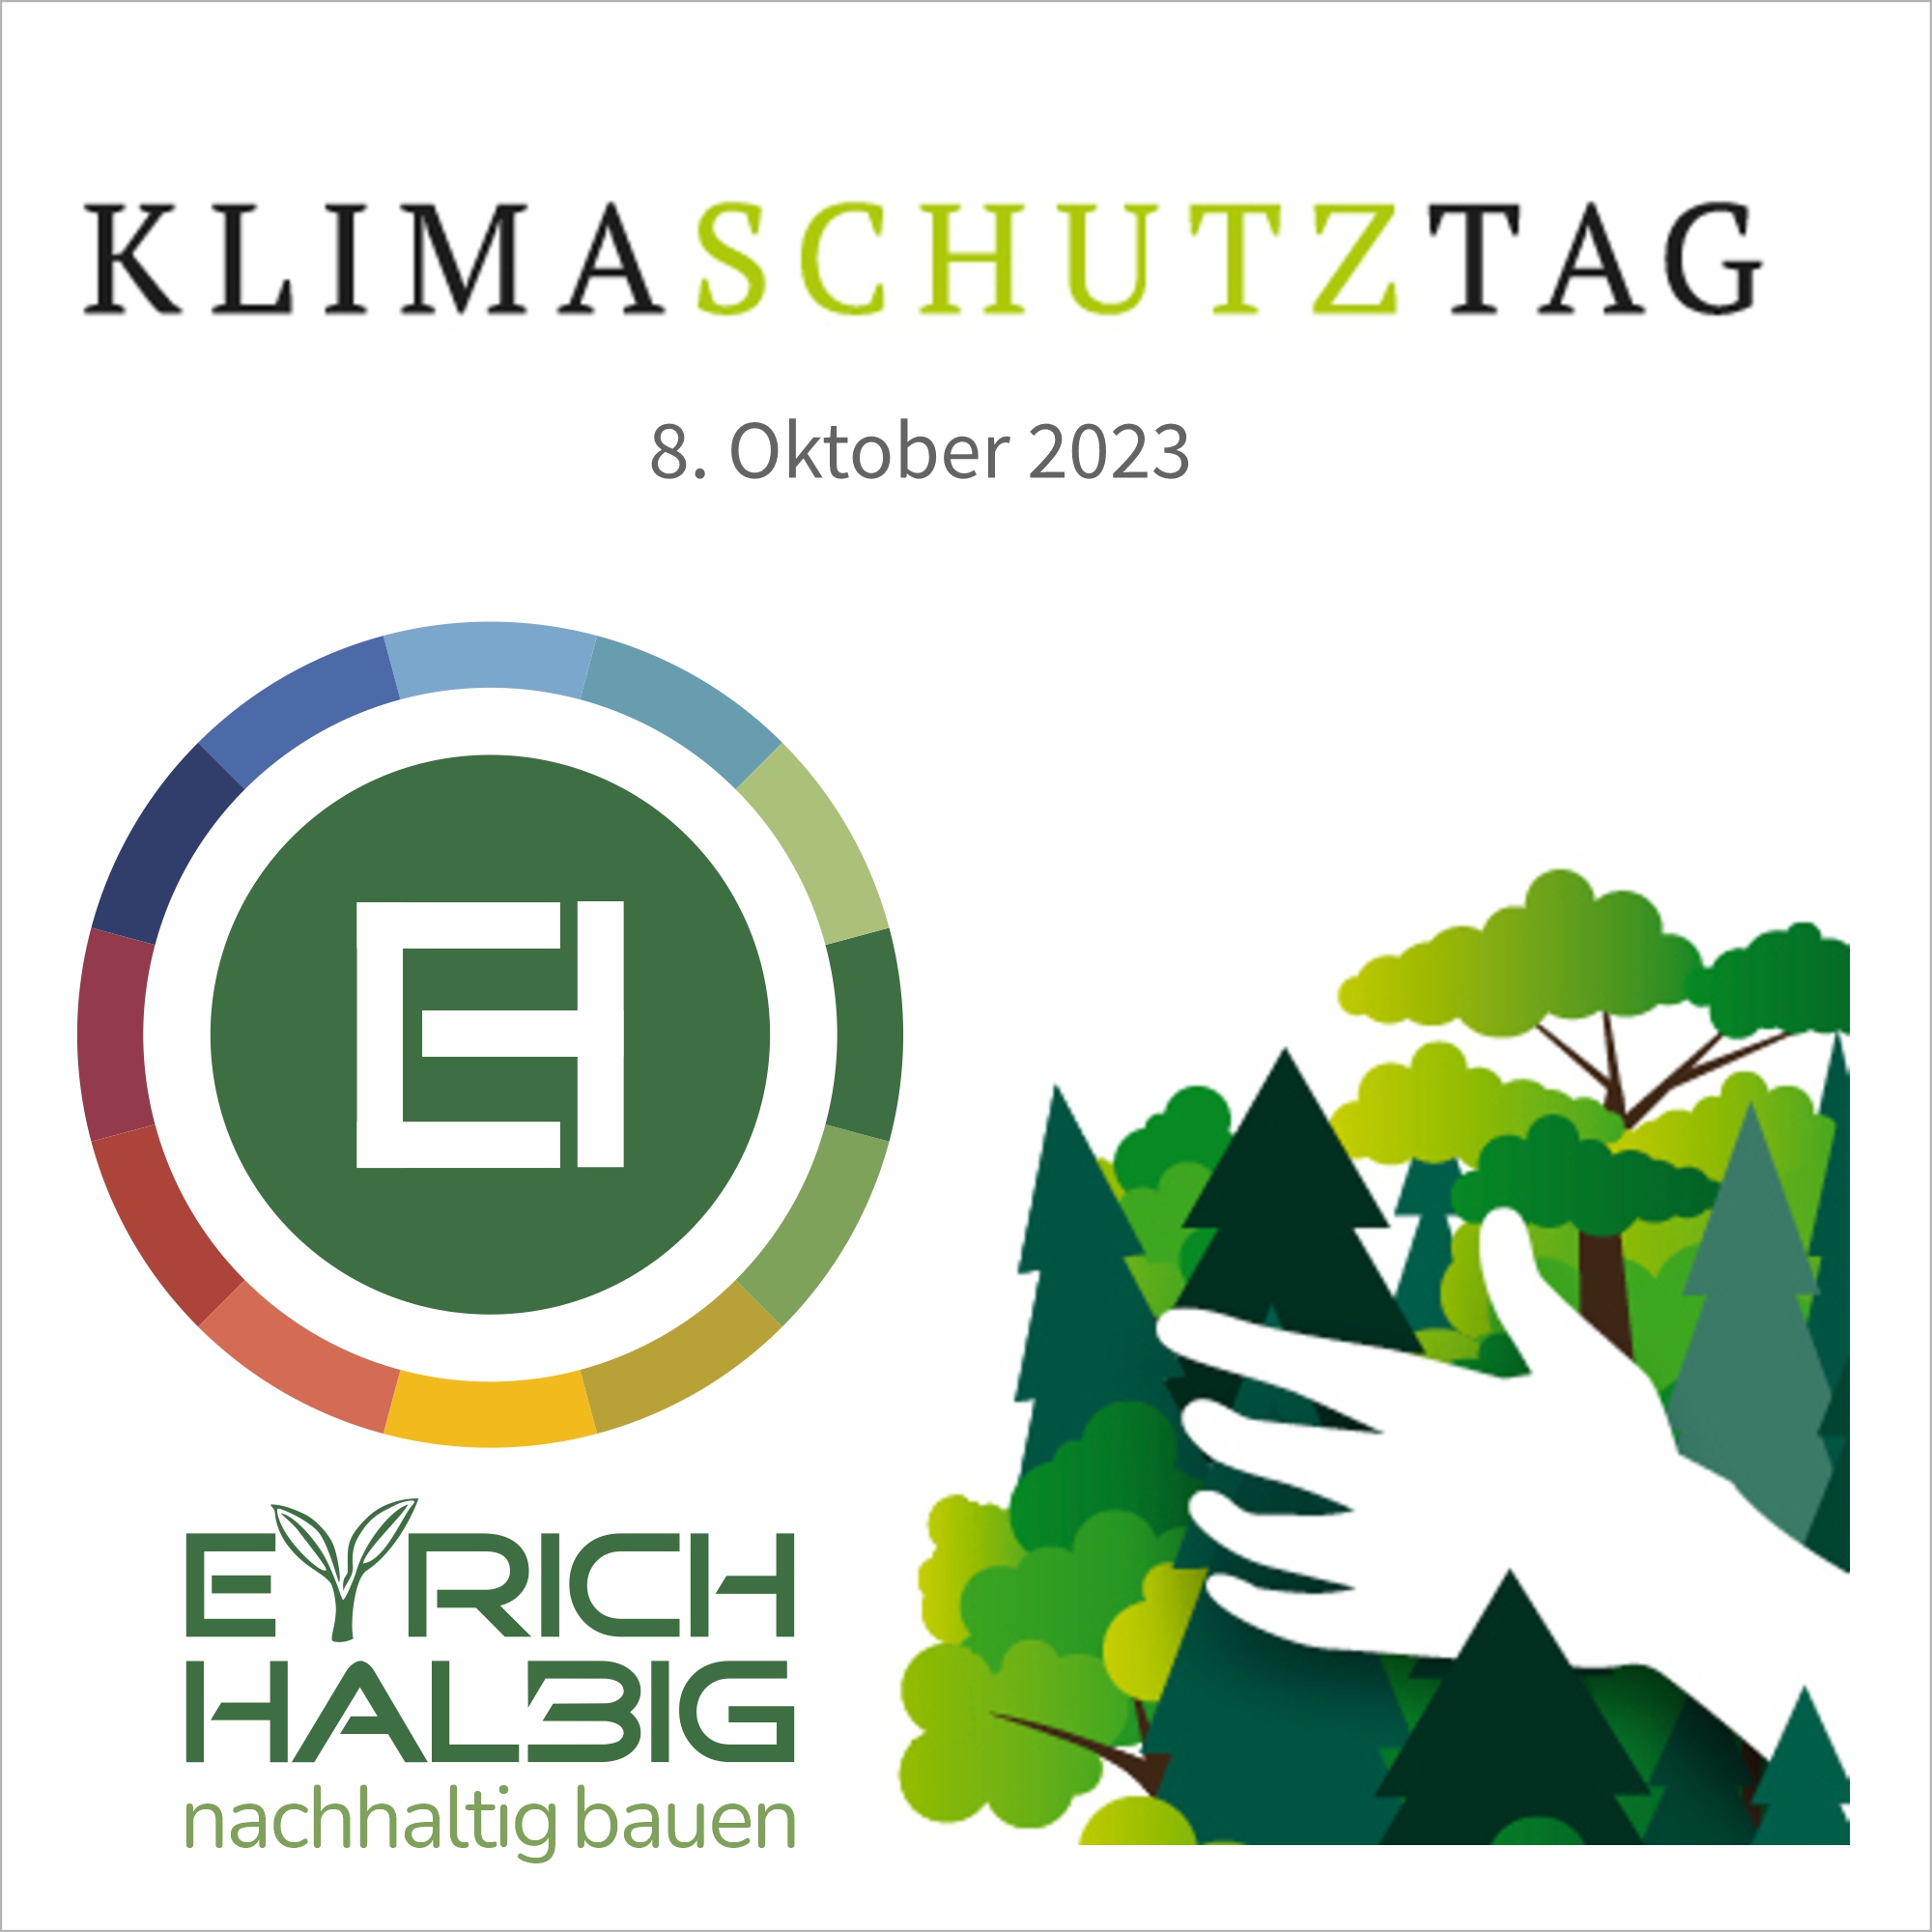 Bei Klick auf das Bild öffnet sich der Klimaschutztag bei EYRICH-HALBIG HOLZBAU in einem neuen Browserfenster.